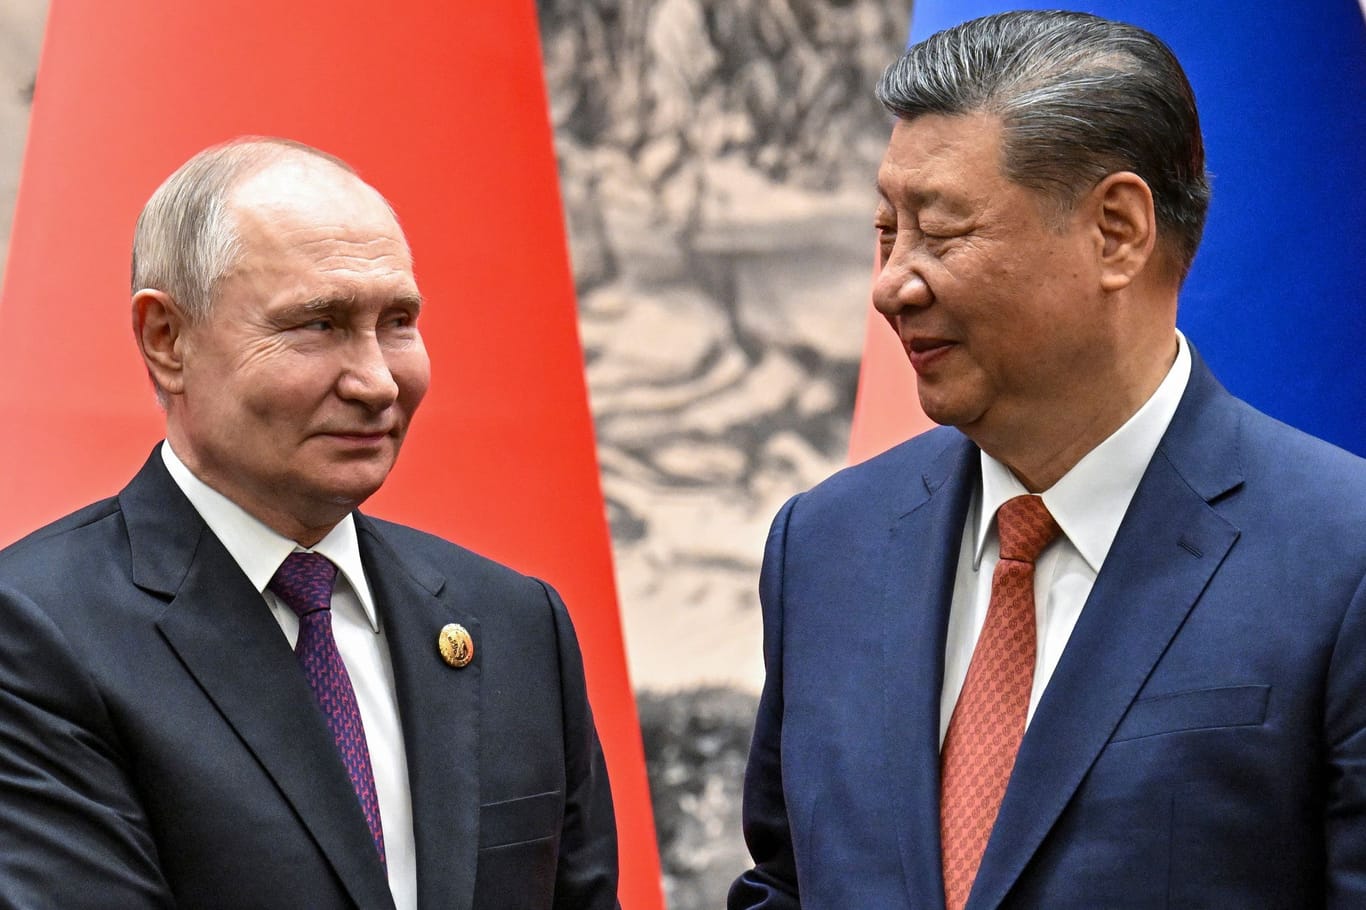 Wladimir Putin und Xi Jinping: China und Russland bauen ihren Einfluss im Nahen Osten aus.